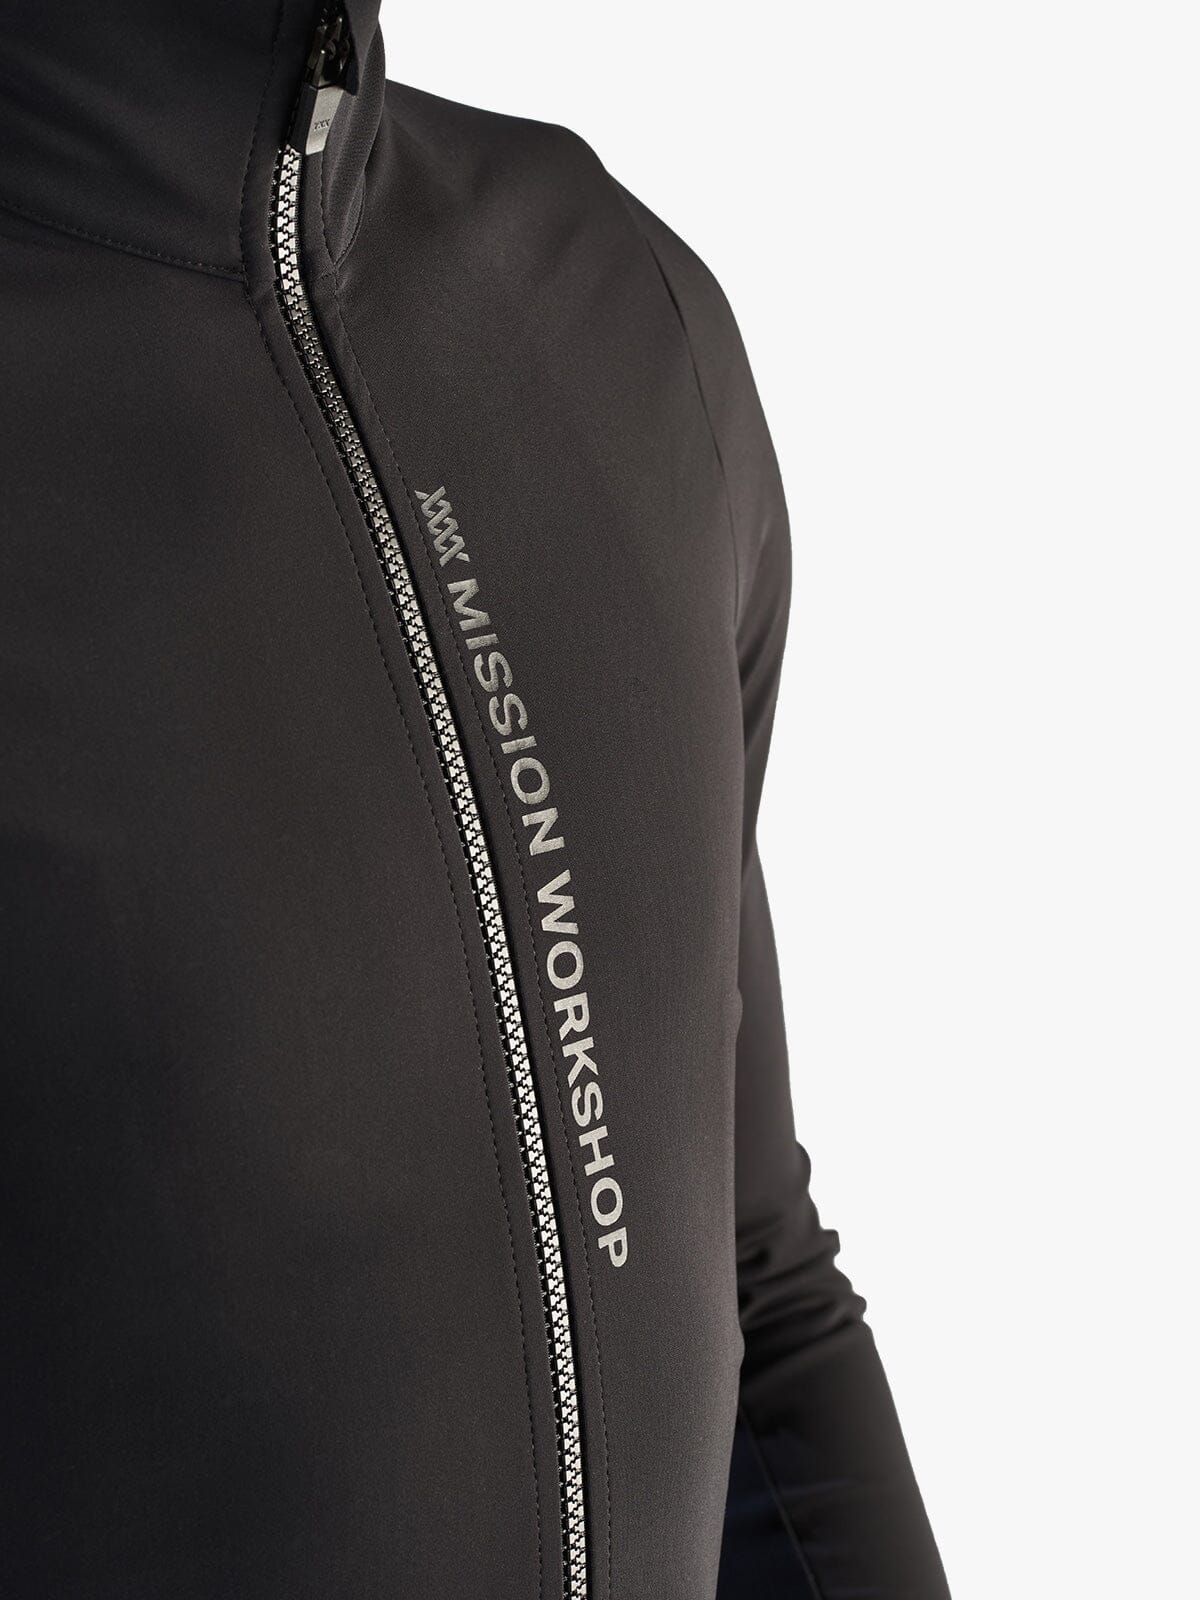 Range Jacket Men's by Mission Workshop - Bolsas impermeables y ropa técnica - San Francisco y Los Angeles - Construido para durar - Garantizado para siempre